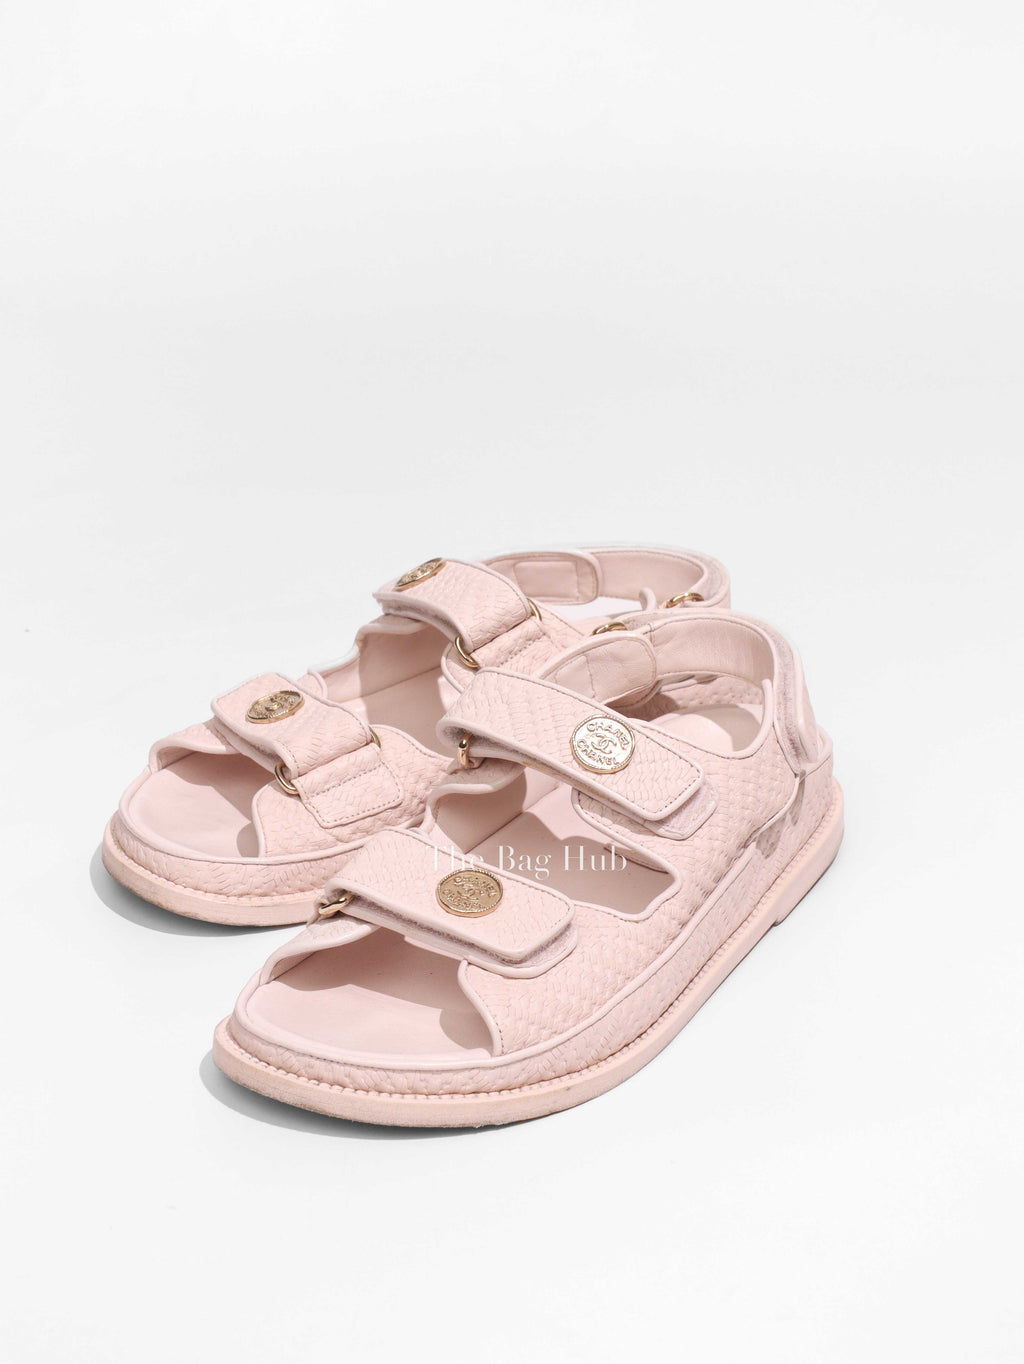 Chanel Beige Calfskin Printed Velcro Dad Sandals Size 37.5